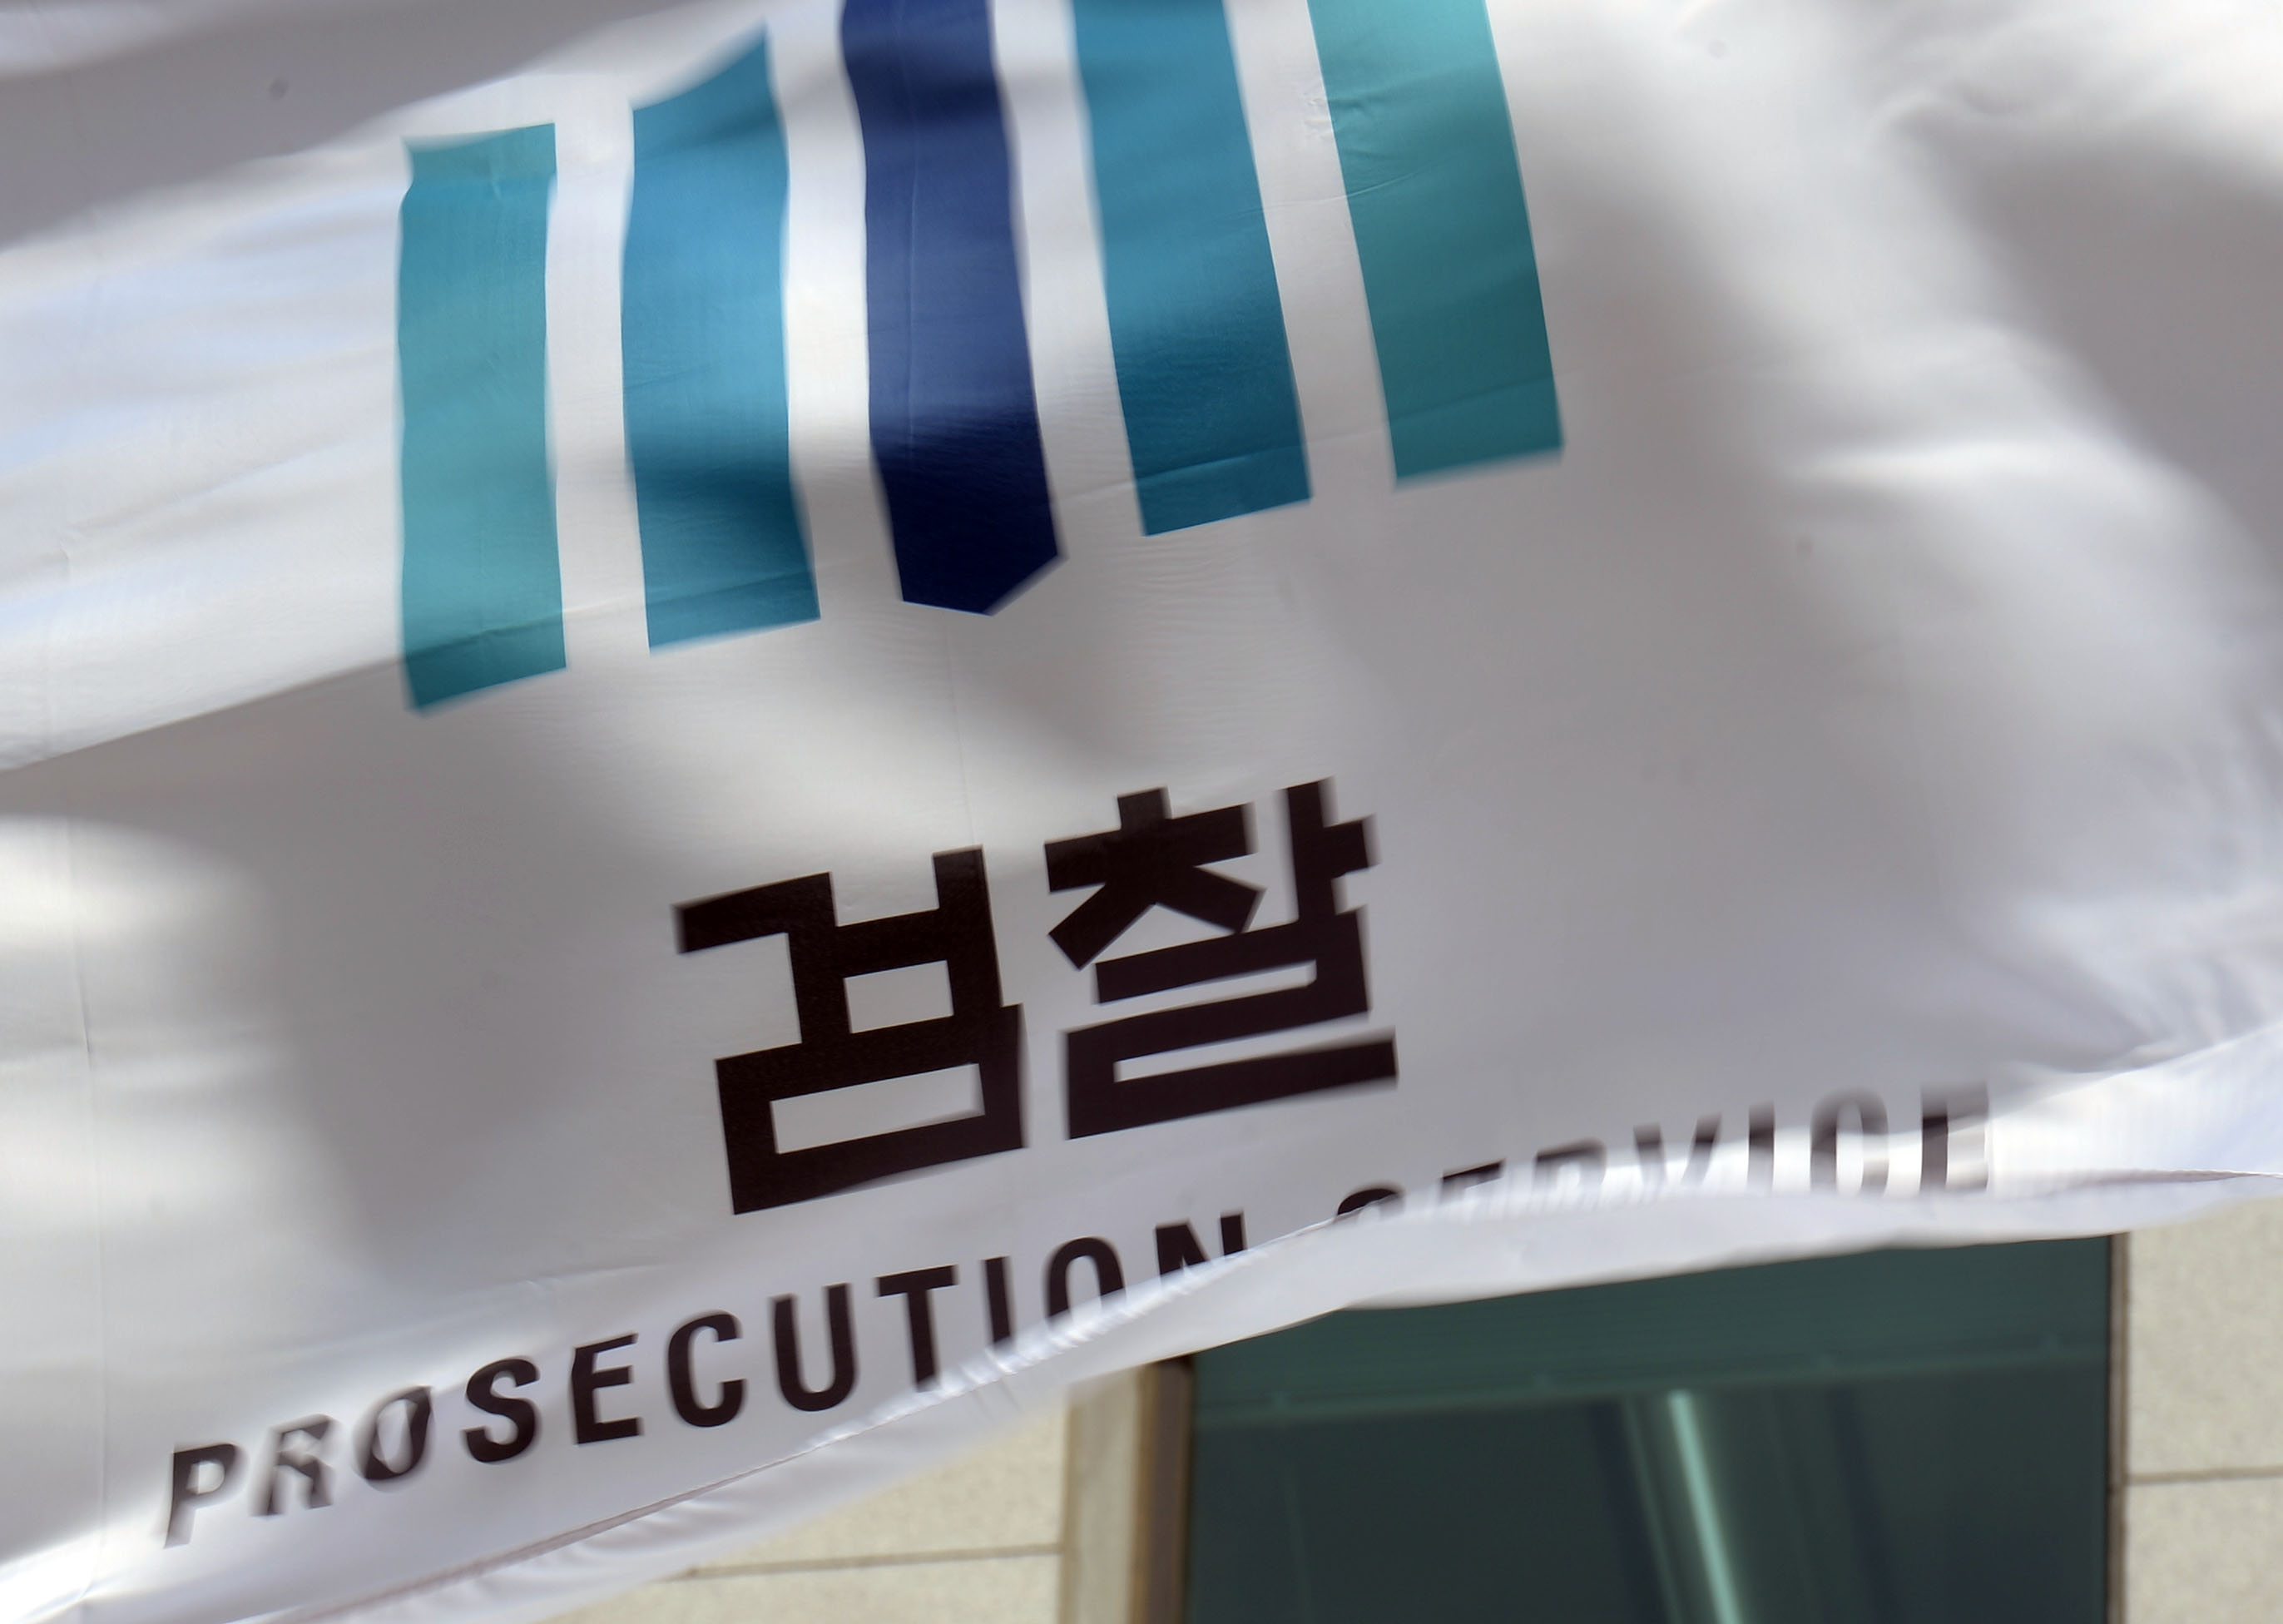 부산지검은 지난 9일 부산법원종합청사 앞에서 법적 분쟁 상대를 흉기로 살해한 사건과 관련해 전담 수사팀을 구성했다고 17일 밝혔다.